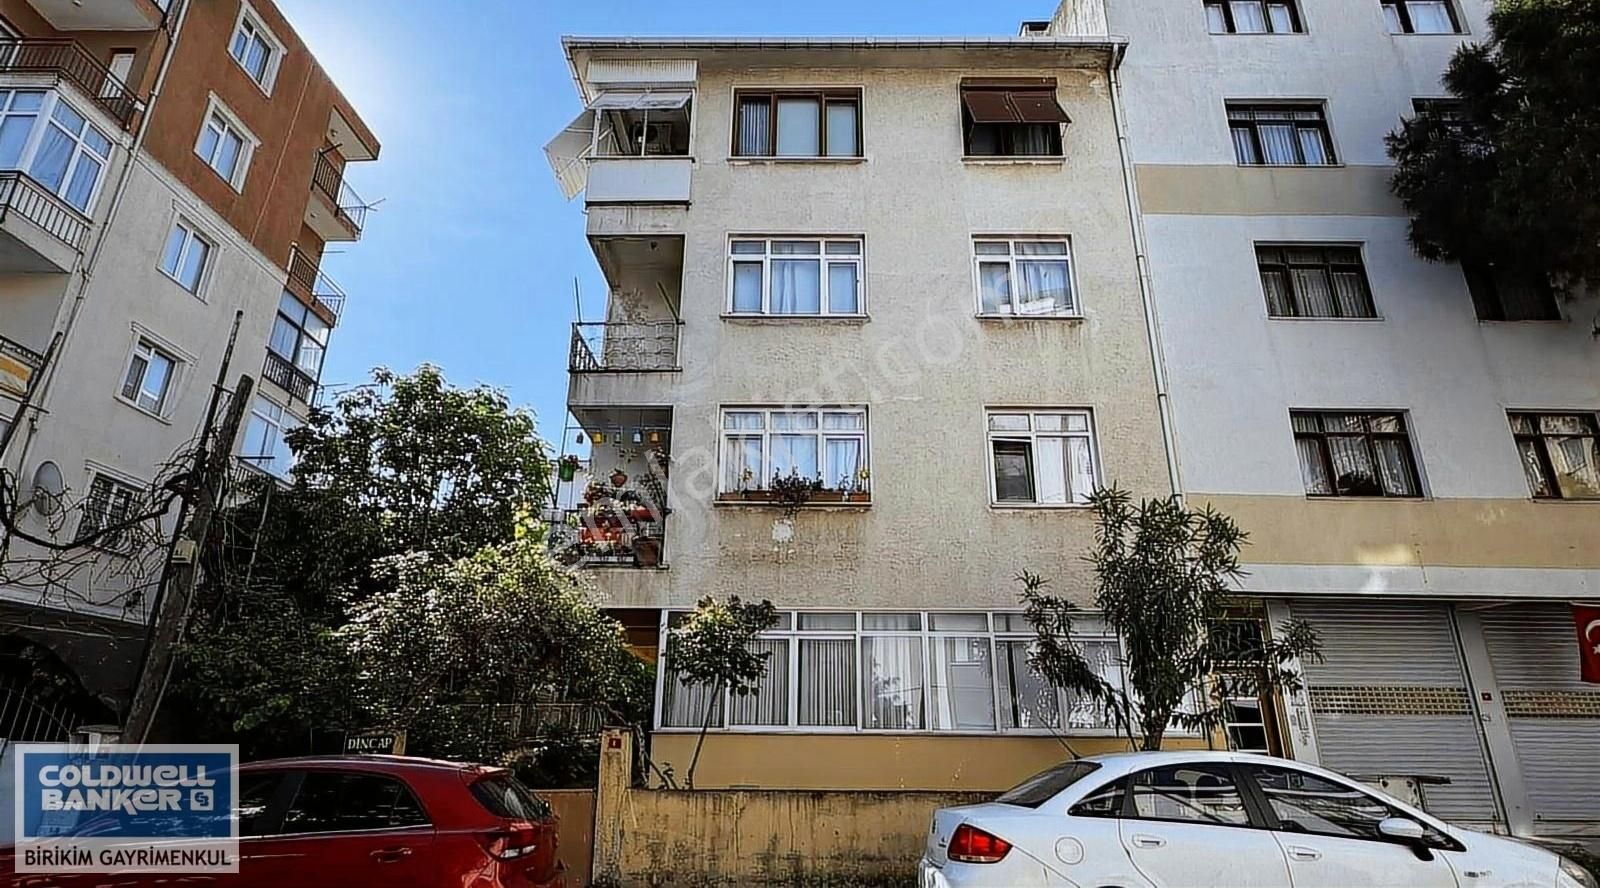 Maltepe Bağlarbaşı Marmaraya Yakın Kiralık Daire Bağlarbaşı Mahallesinde 2+1 Kiralık daire